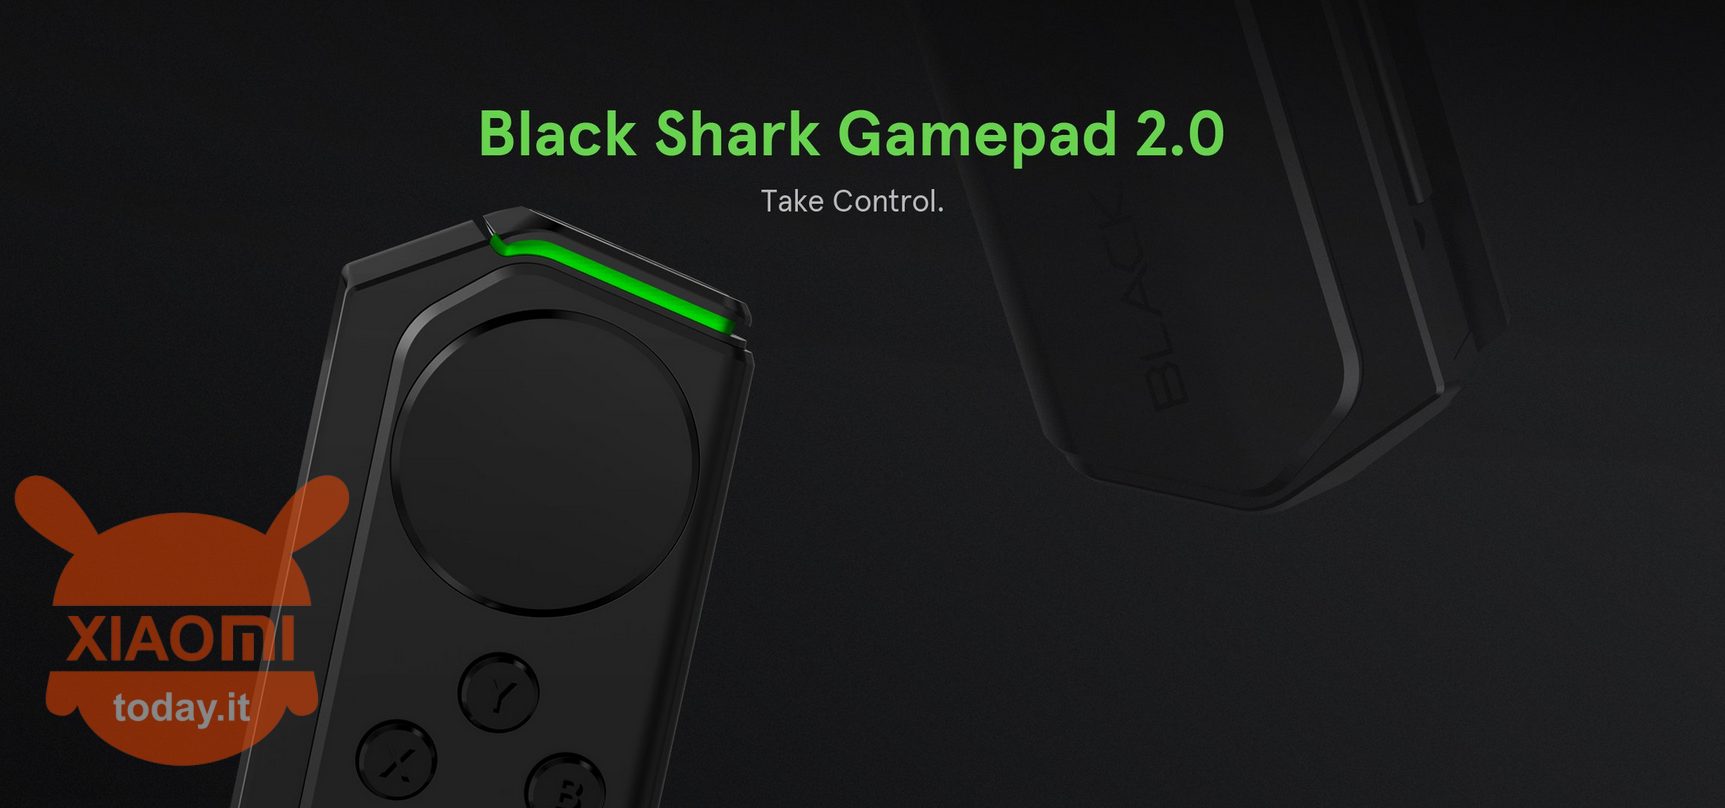 gamepad de tubarão preto 2.0